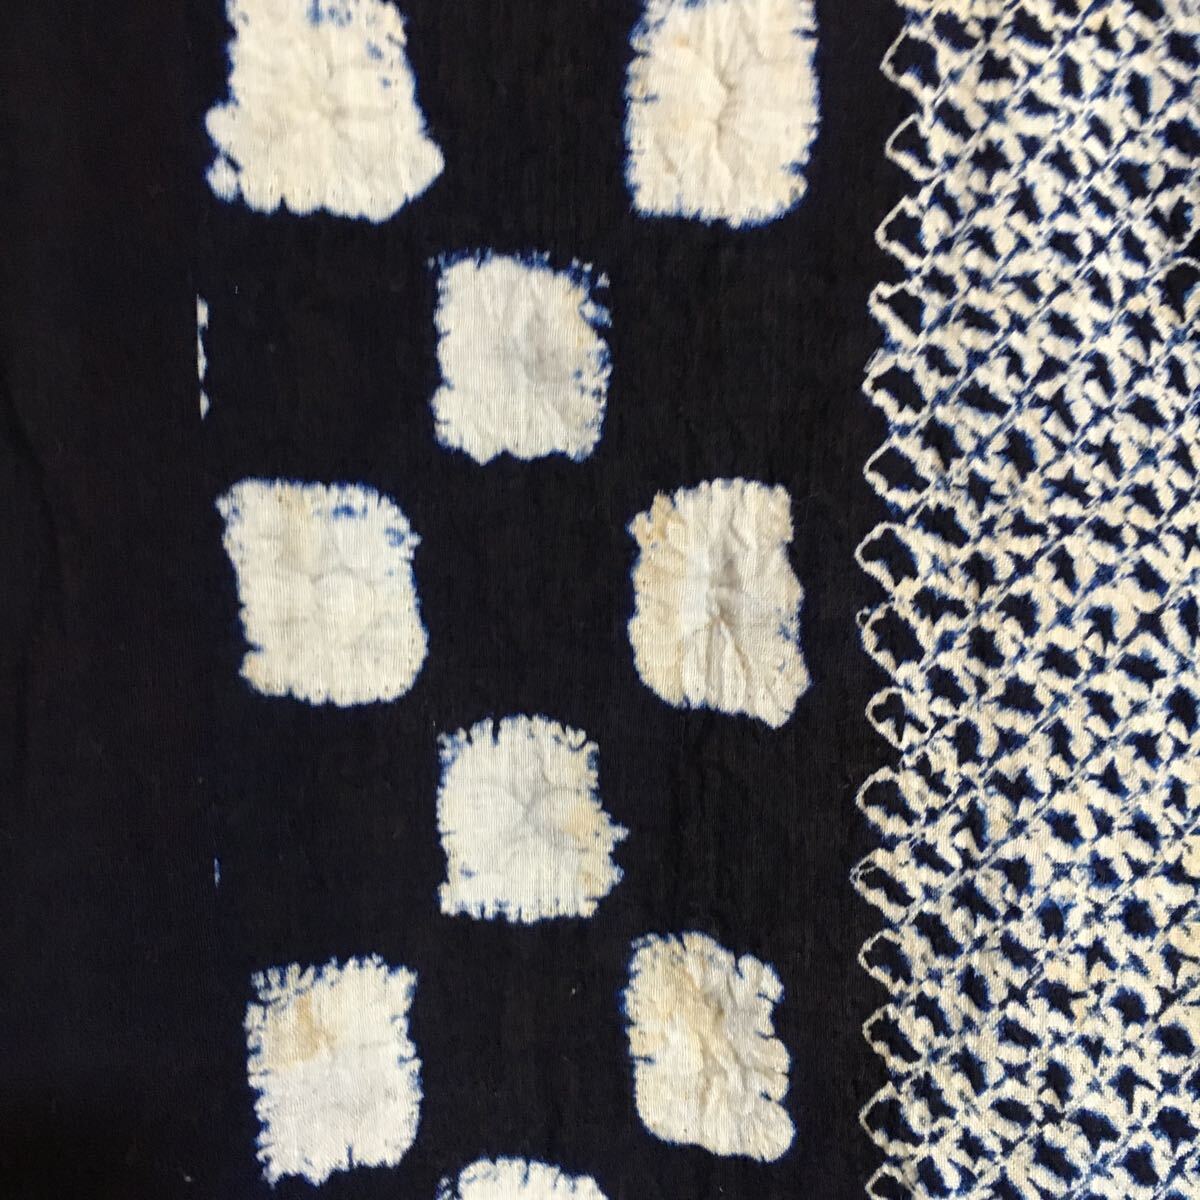 浴衣 女性和装 絞り柄 綿 和服 夏用着物 紺地 紺色 シミあり の画像3